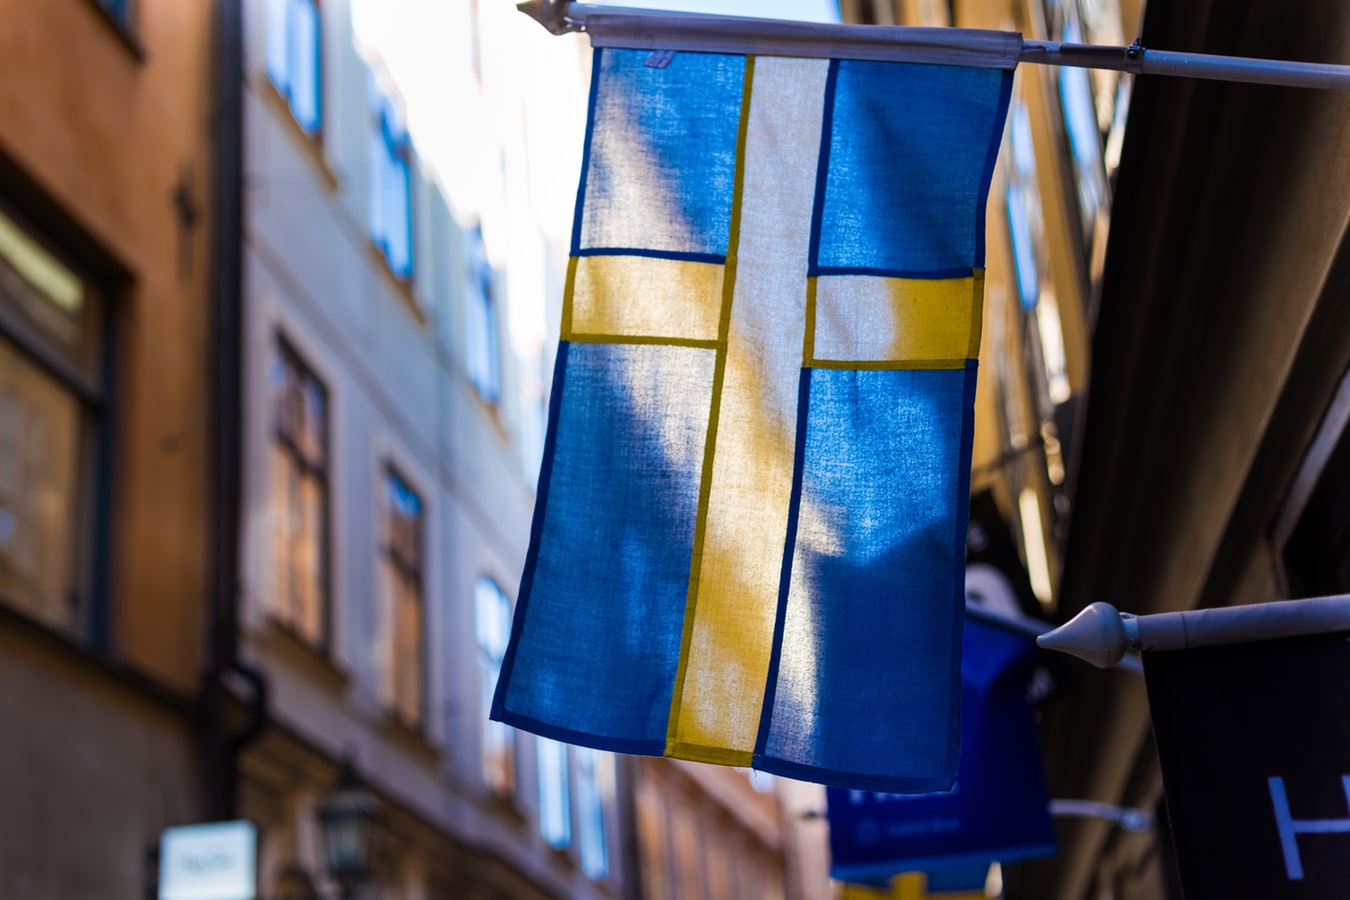 Σουηδία κορονοϊός: Μια χώρα χωρίς μέτρα – Ελληνίδα από τις Σέρρες περιγράφει